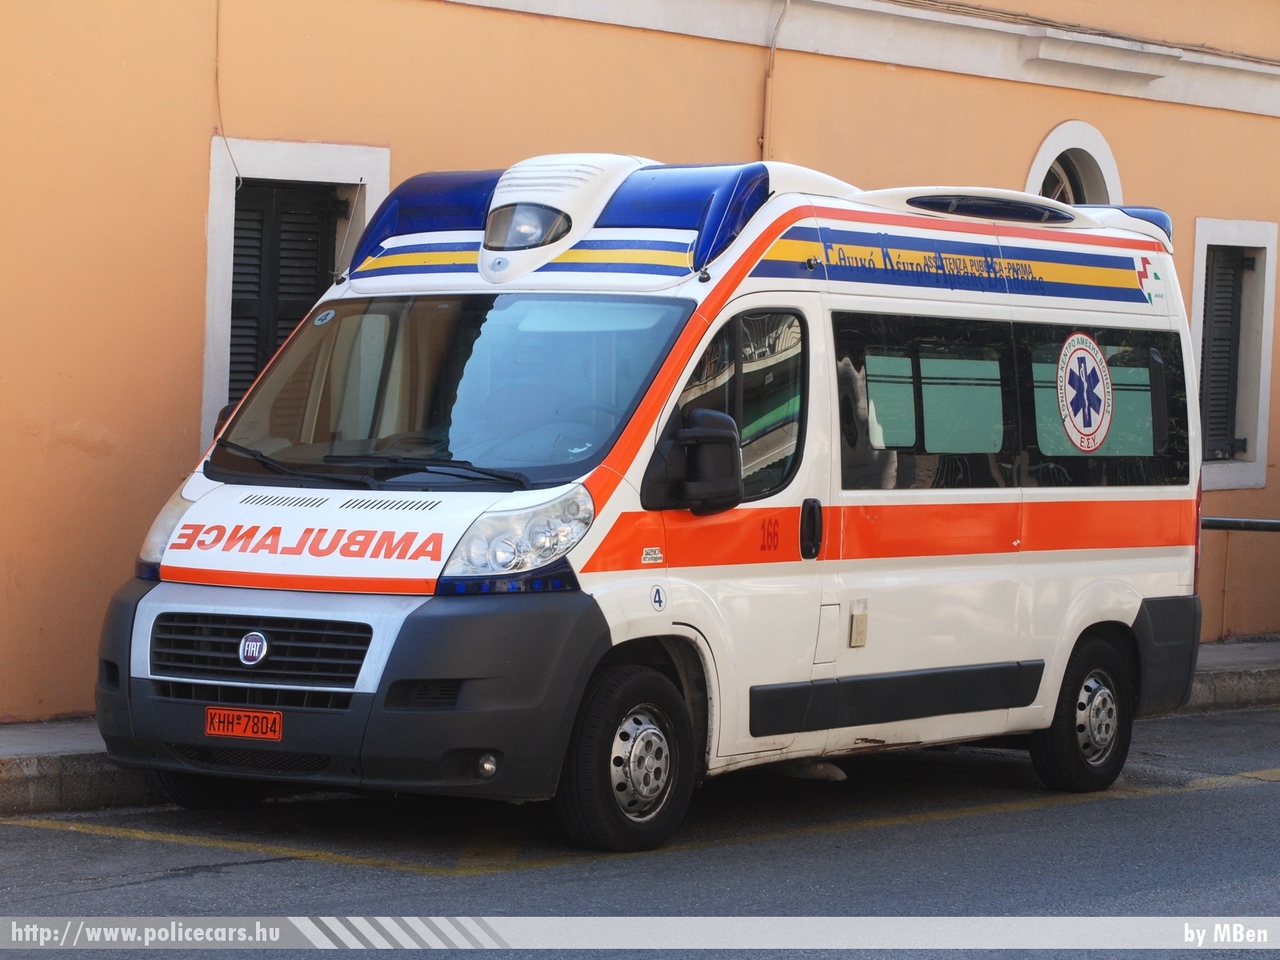 Fiat Ducato, Korfu, fotó: MBen
Keywords: görög Görögország mentő mentőautó Greece greek ambulance